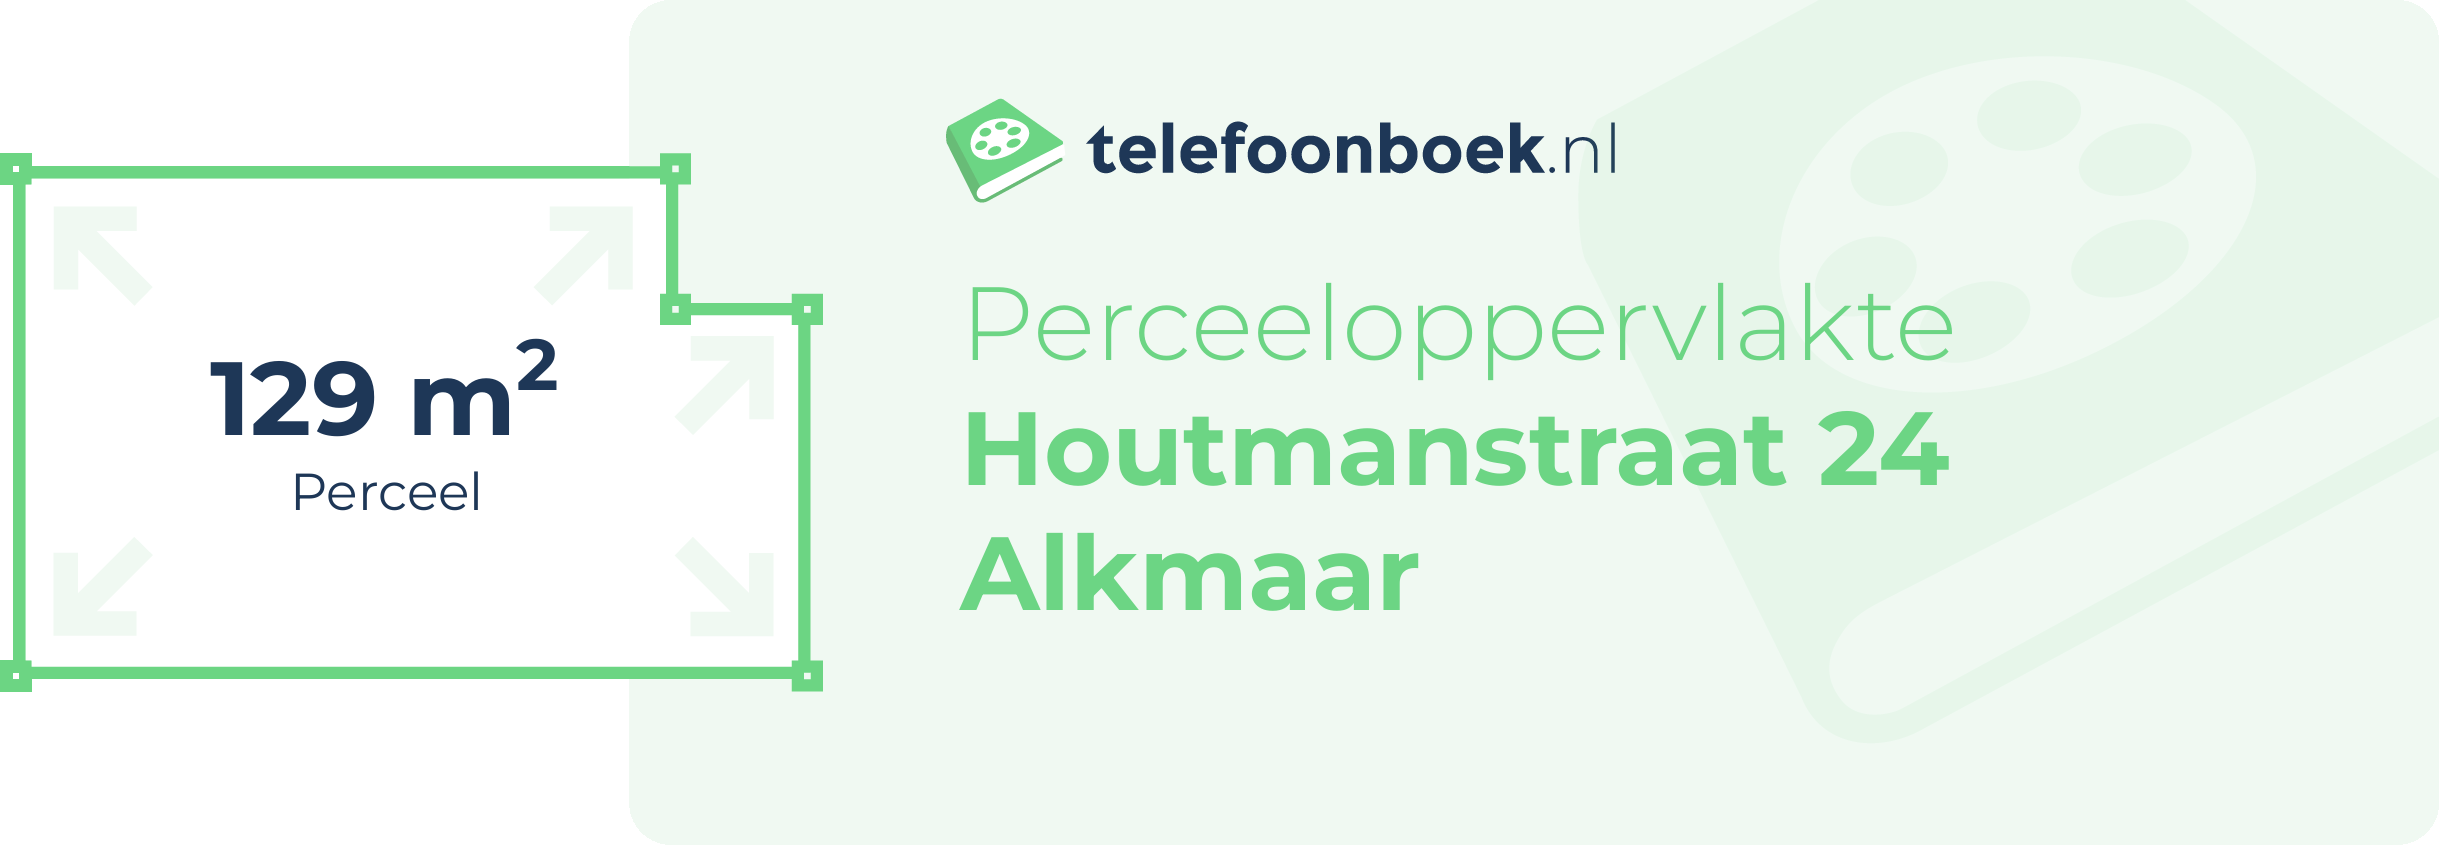 Perceeloppervlakte Houtmanstraat 24 Alkmaar